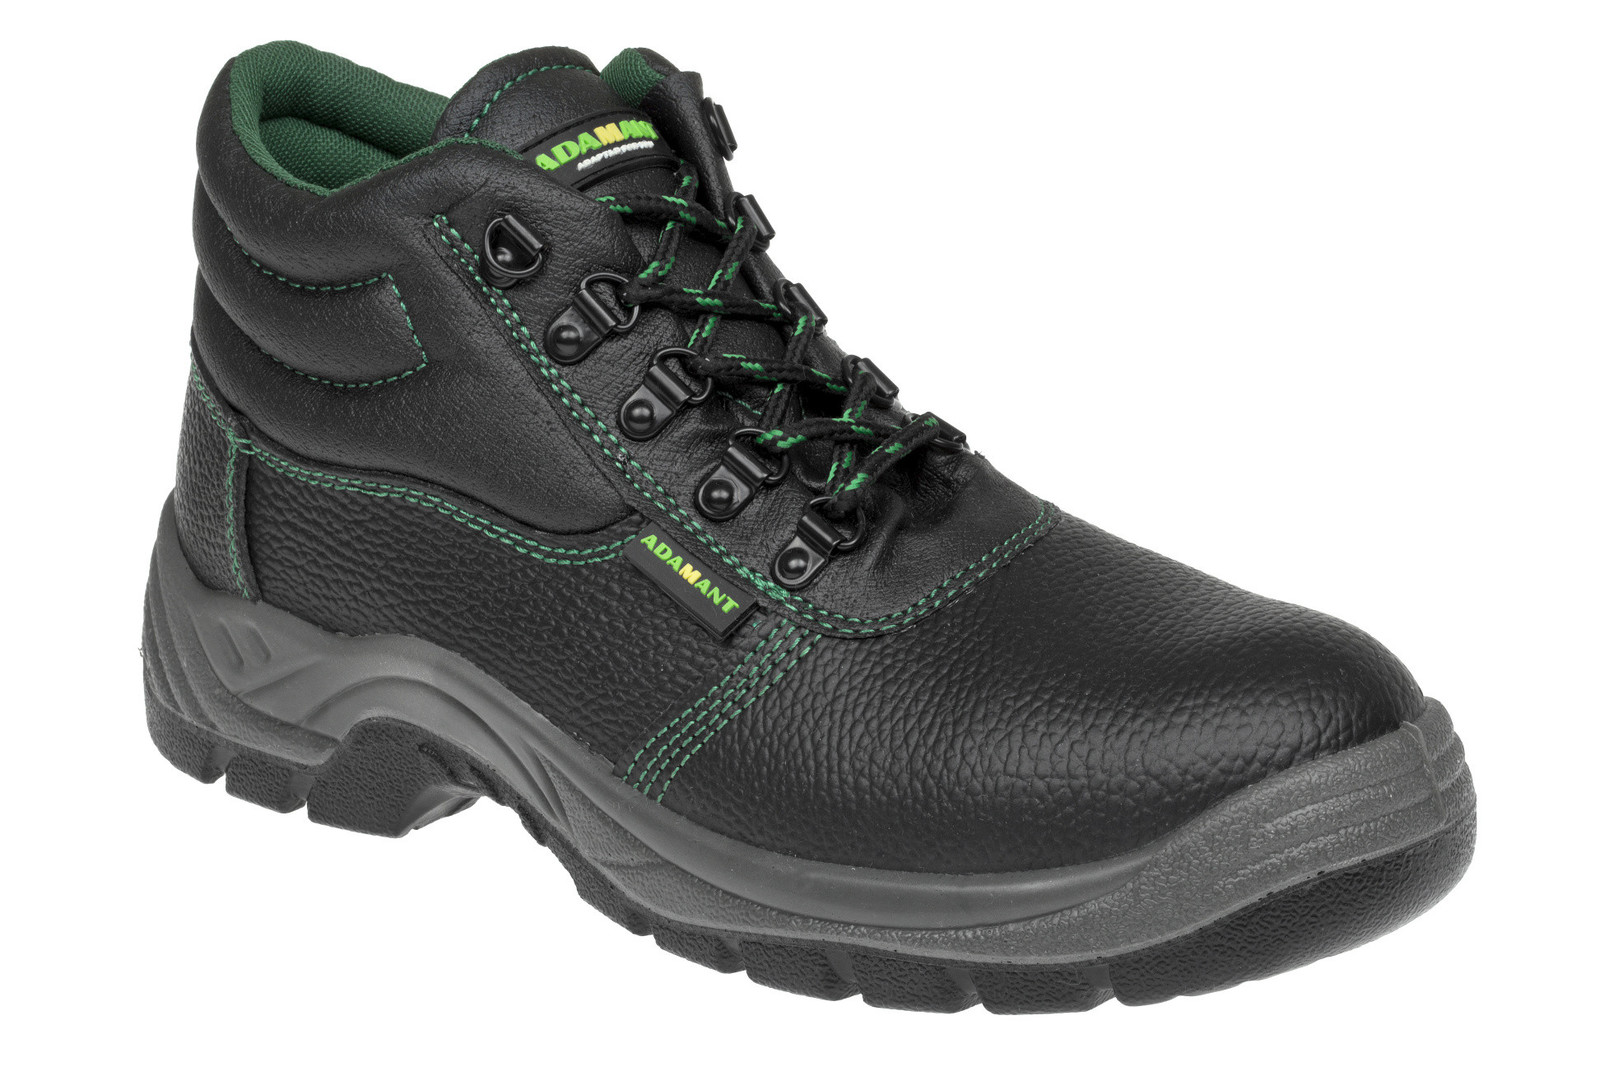 Bezpečnostná obuv Adamant Classic S1P - veľkosť: 38, farba: čierna